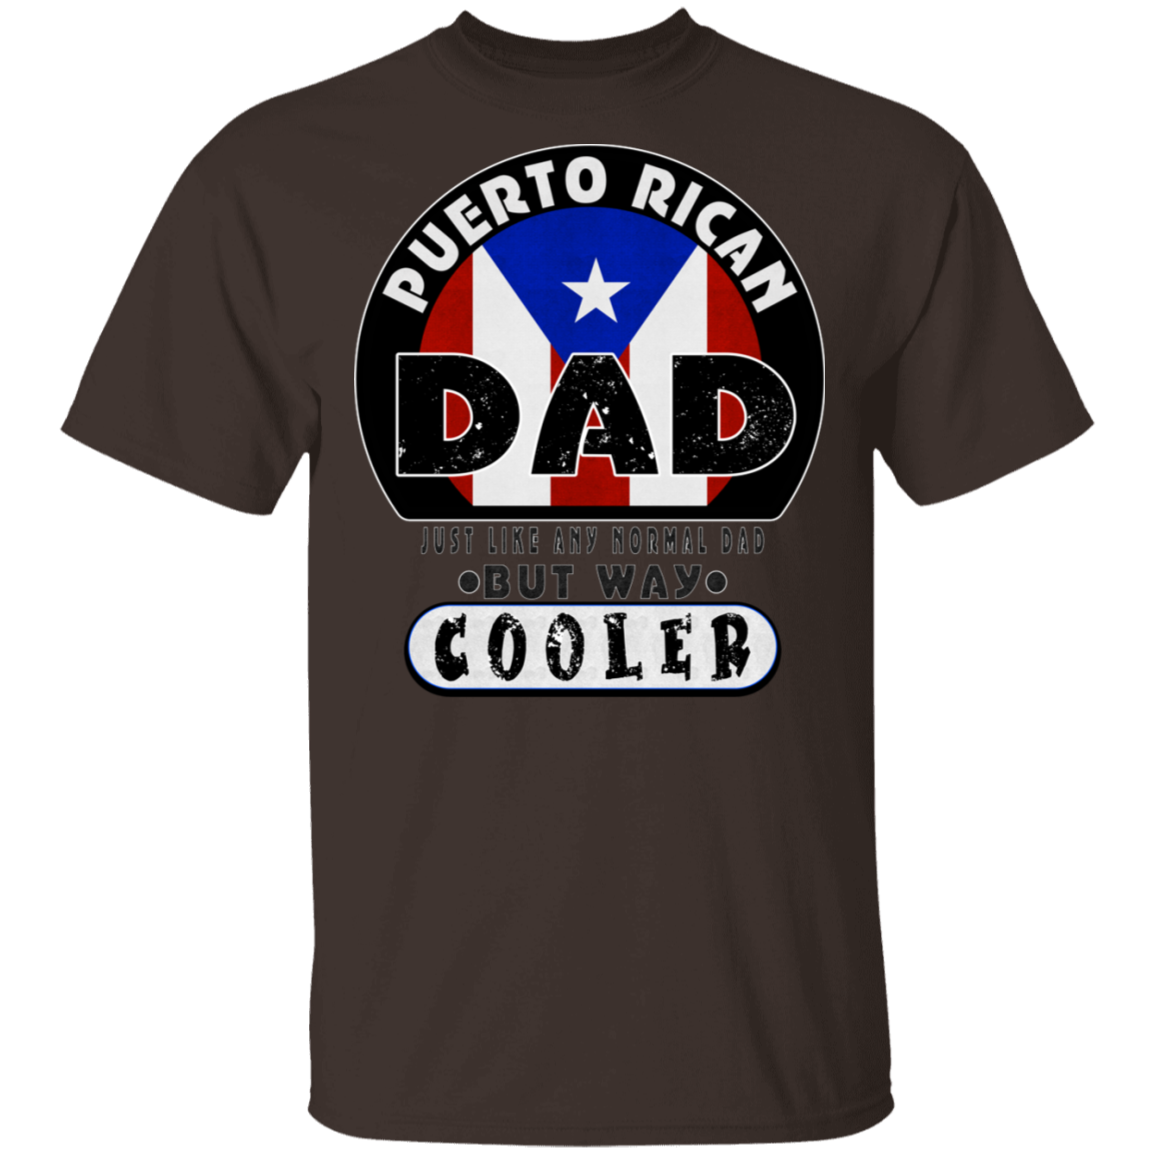 COOL DAD 5.3 oz. T-Shirt - Puerto Rican Pride